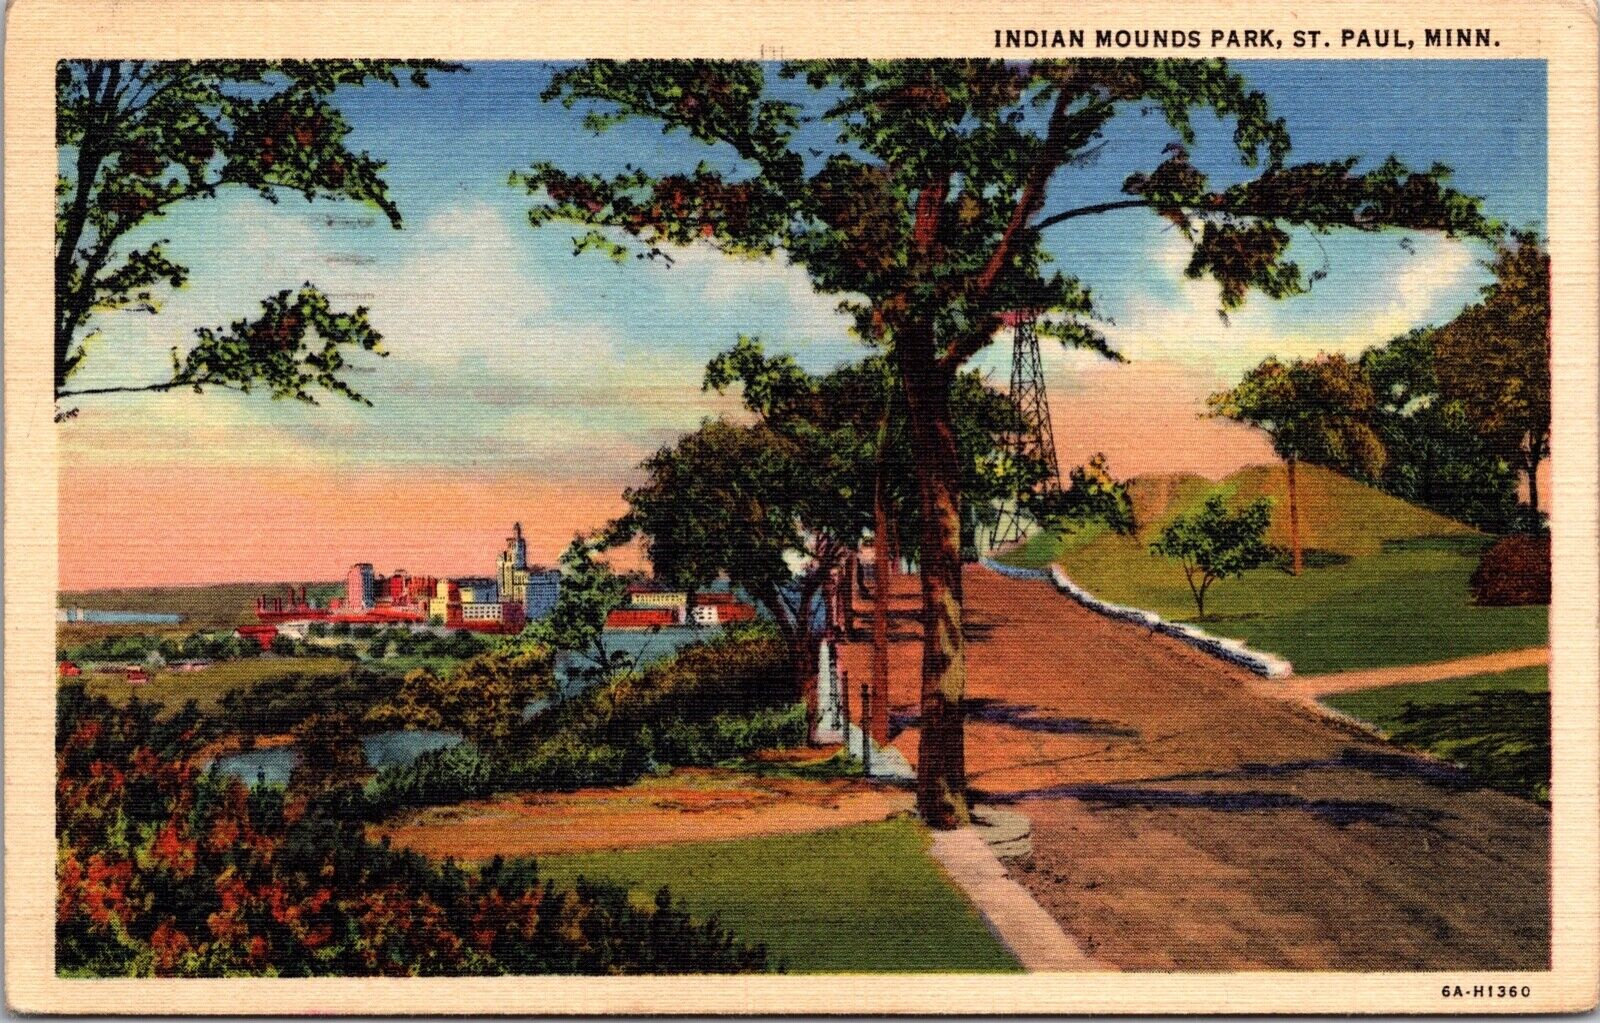 Indians Mound Park St. Paul Minn. 1947 Posted Linen Postcard 6G